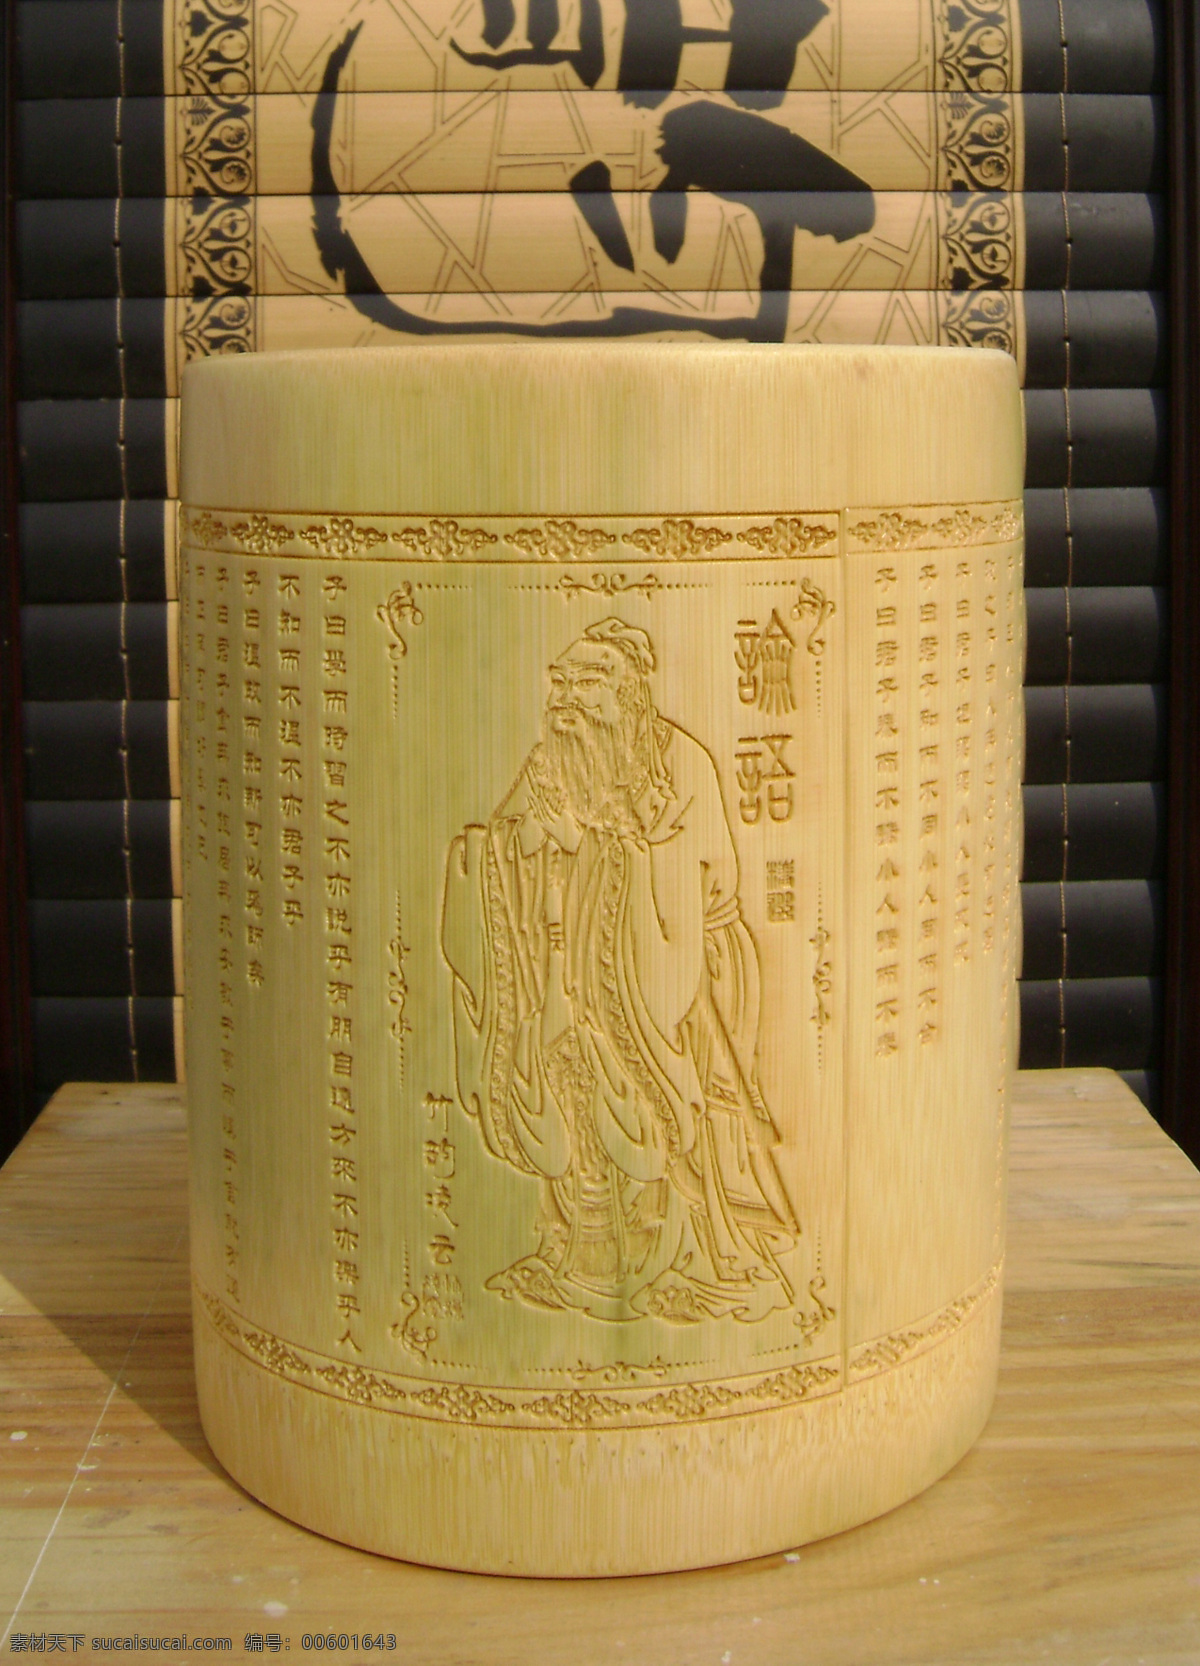 孔子论语 孔子 论语 圣人 竹雕笔筒 激光雕刻 竹工艺品 竹制品 传统文化 文化艺术